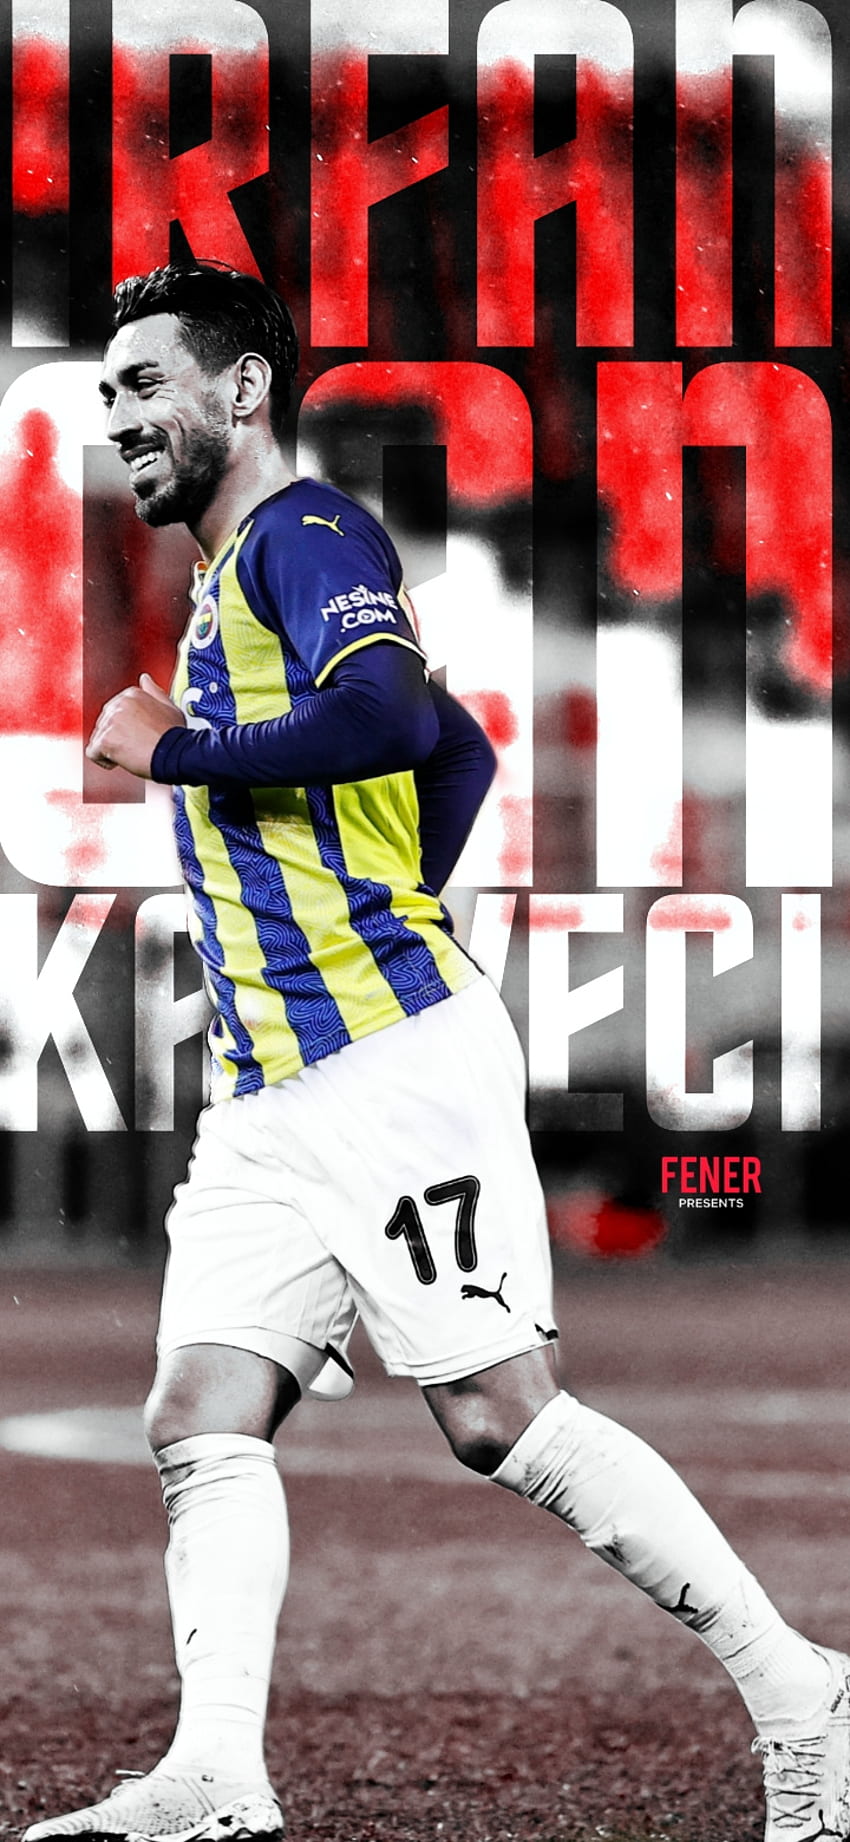 Fenerbahçe, İrfan Can, İrfan Can Kahveci, Fenerbahce, Fenerbahçe HD電話の壁紙